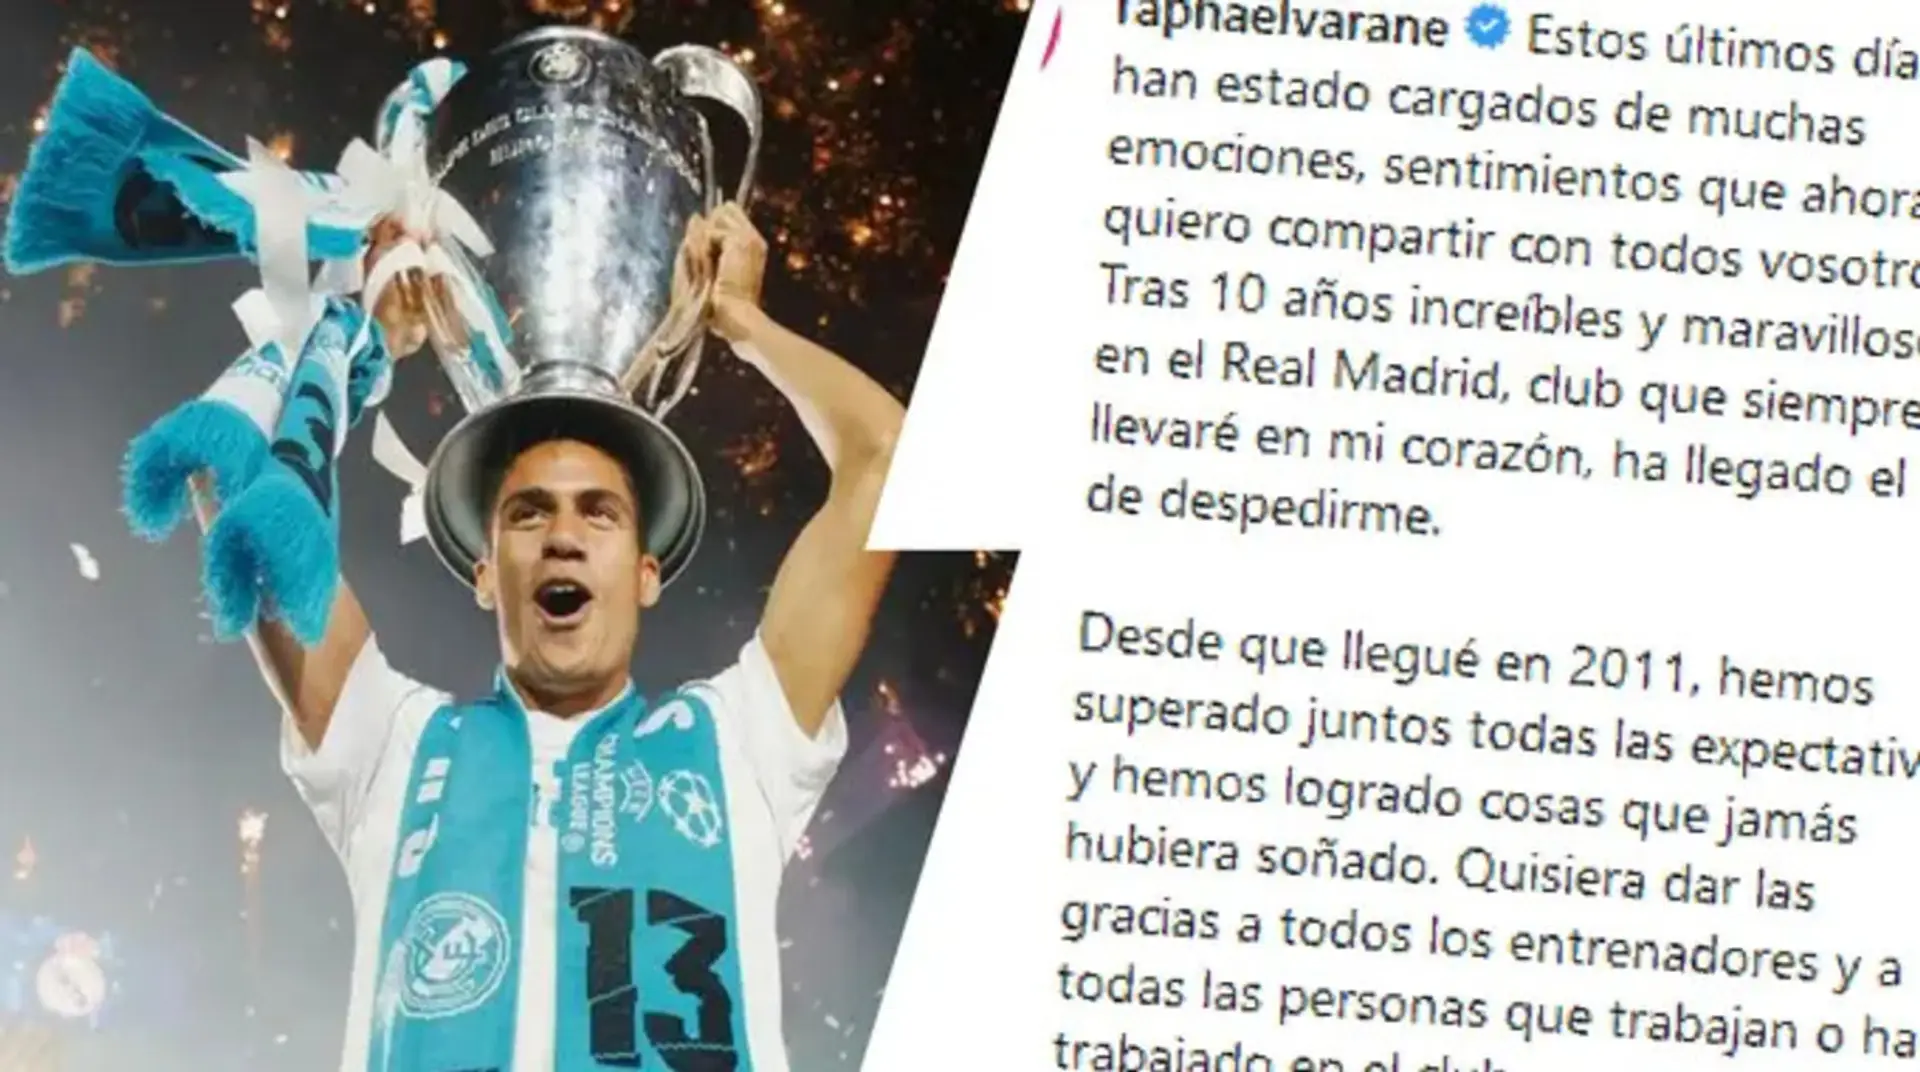 'Ha llegado el día de despedirme': Varane escribe una carta emotiva de despedida al Real Madrid y la afición